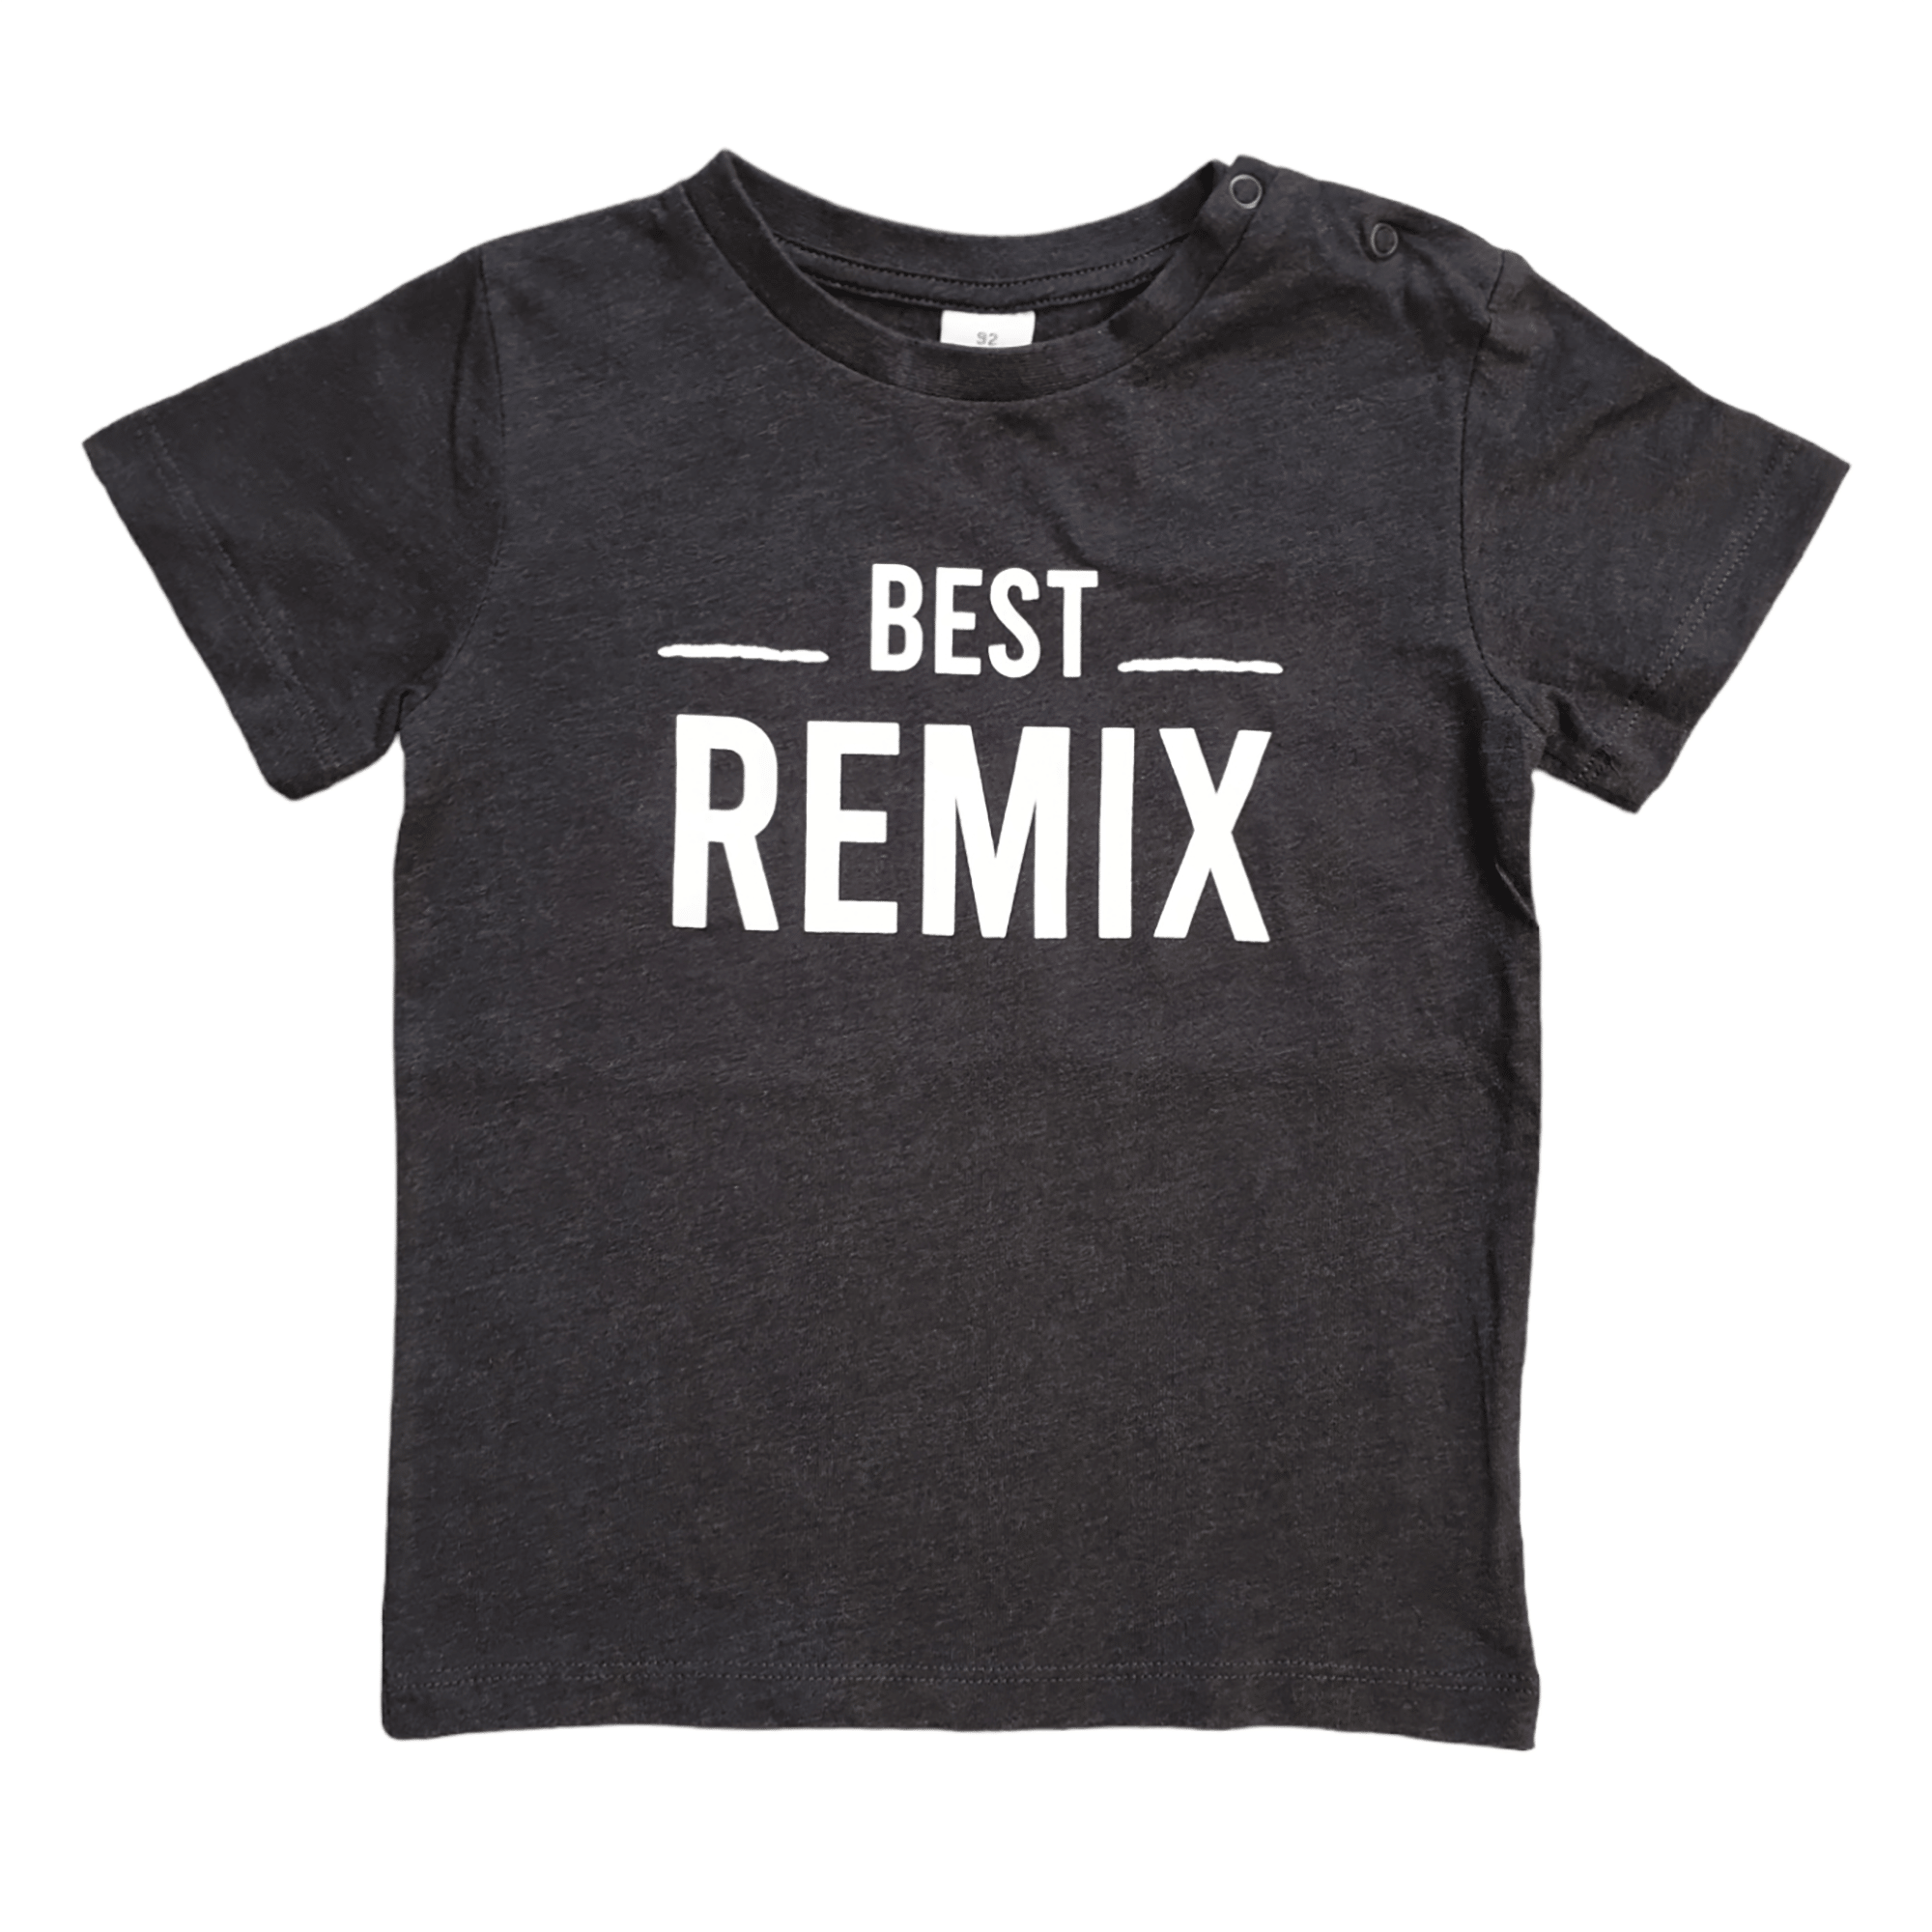 T-Shirt "Best Remix" LITTLE ONE Dunkelgrau M2000584425105 1